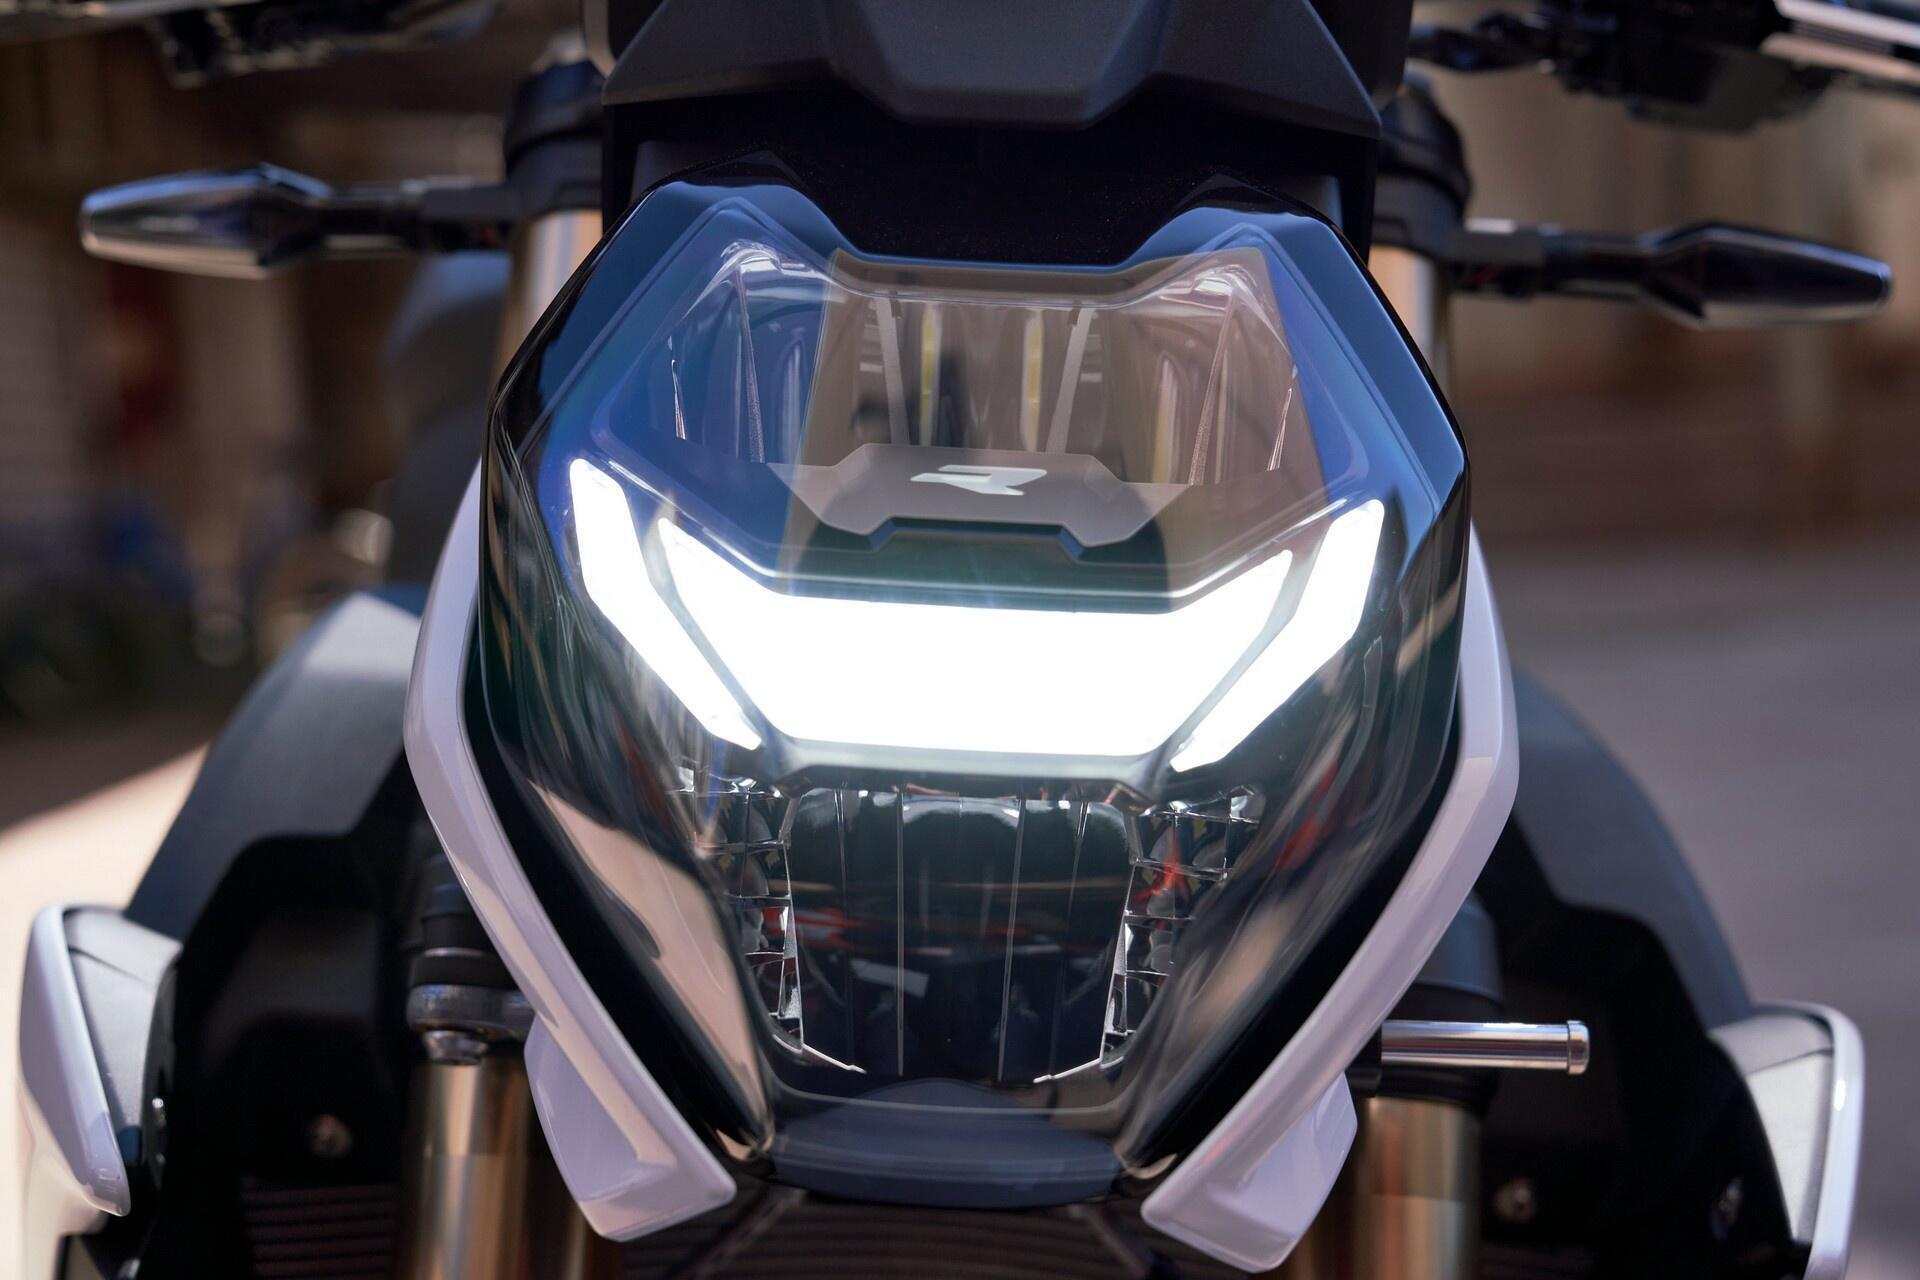 Đánh giá xe Honda SFA 150cc 2017 Mẫu mô tô hoàn toàn mới ra mắt thị trường   MuasamXecom